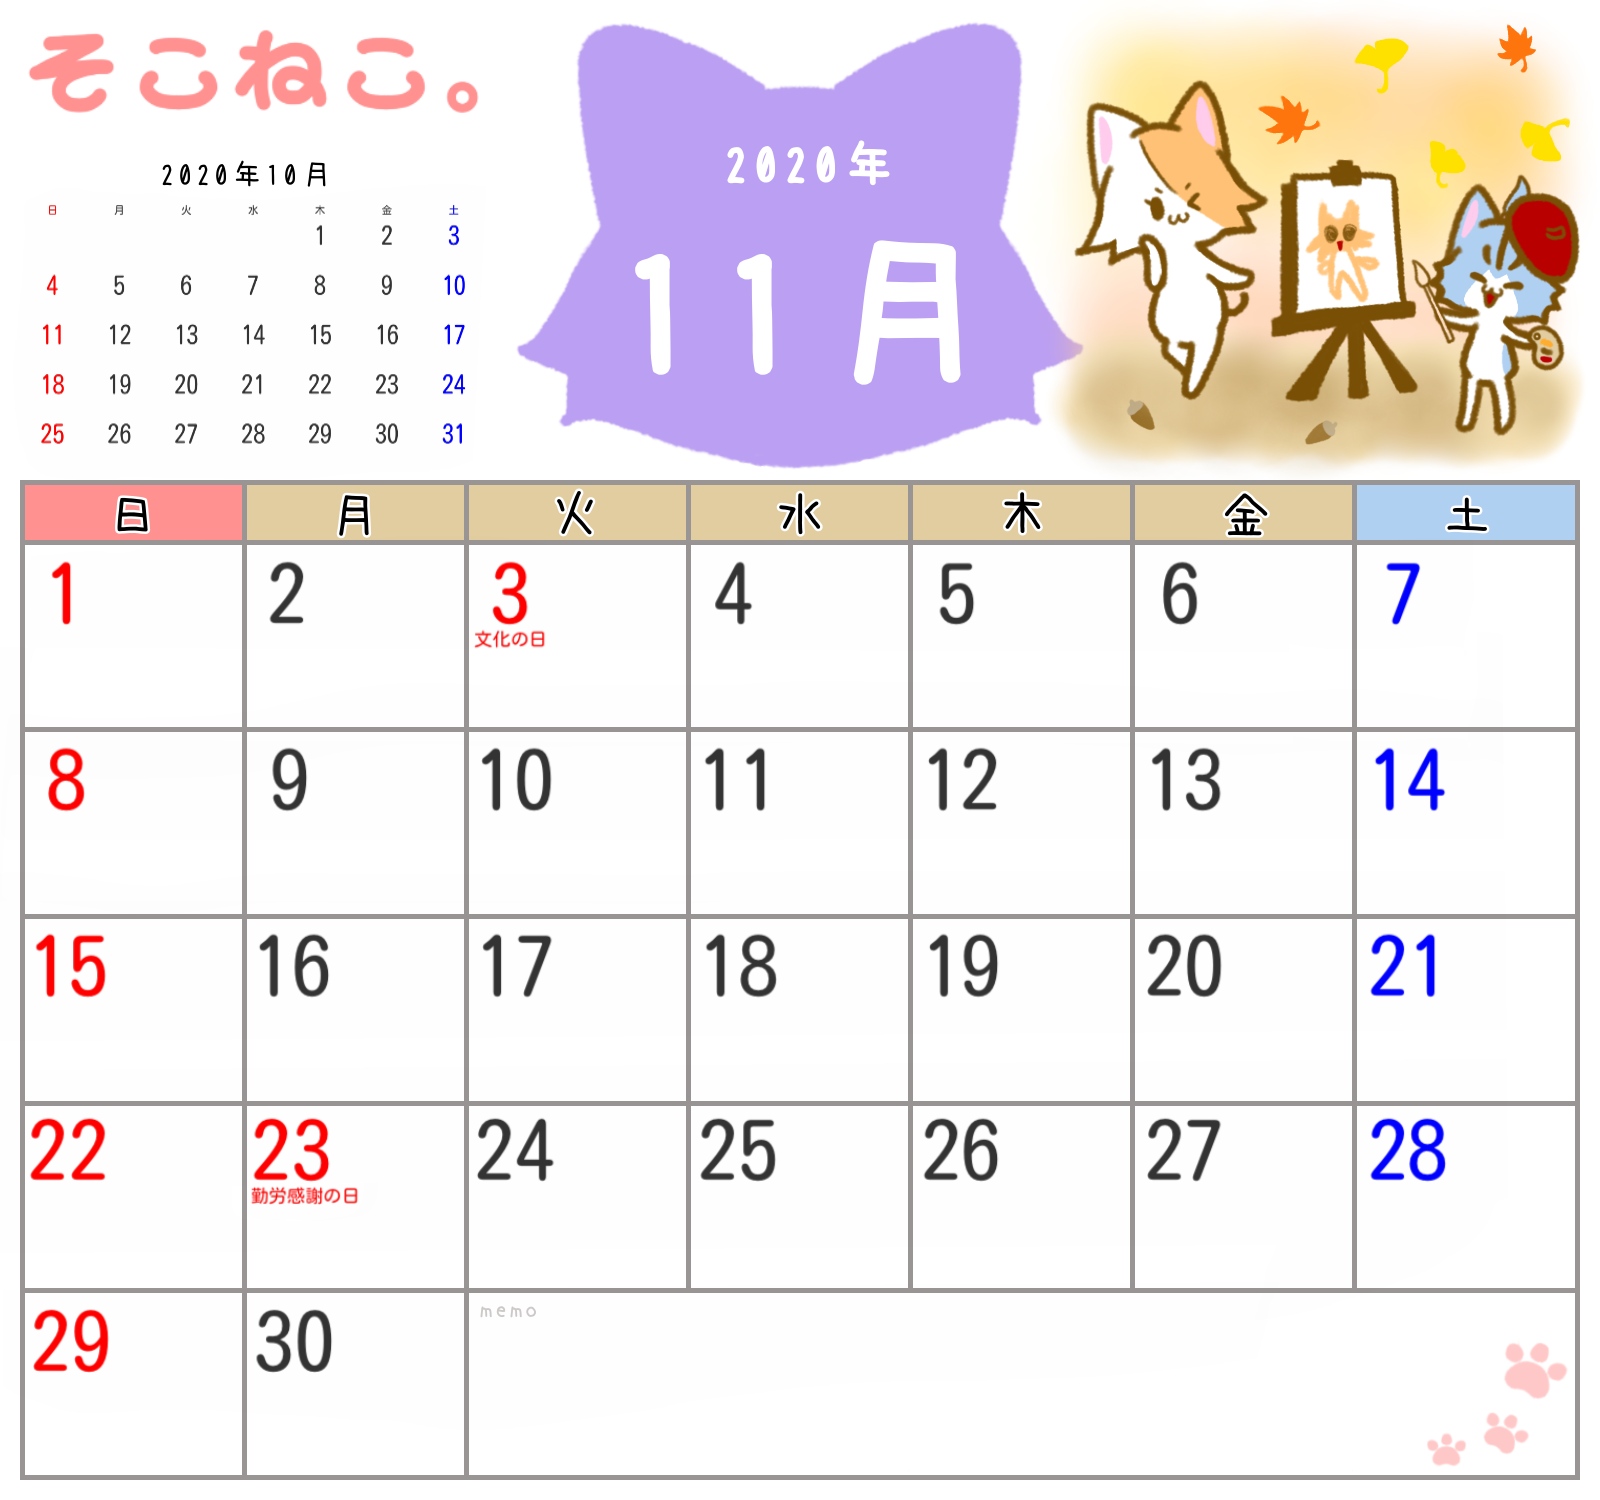 寄生虫 バラ色 瀬戸際 11 月 無料 カレンダー Seisui Jp